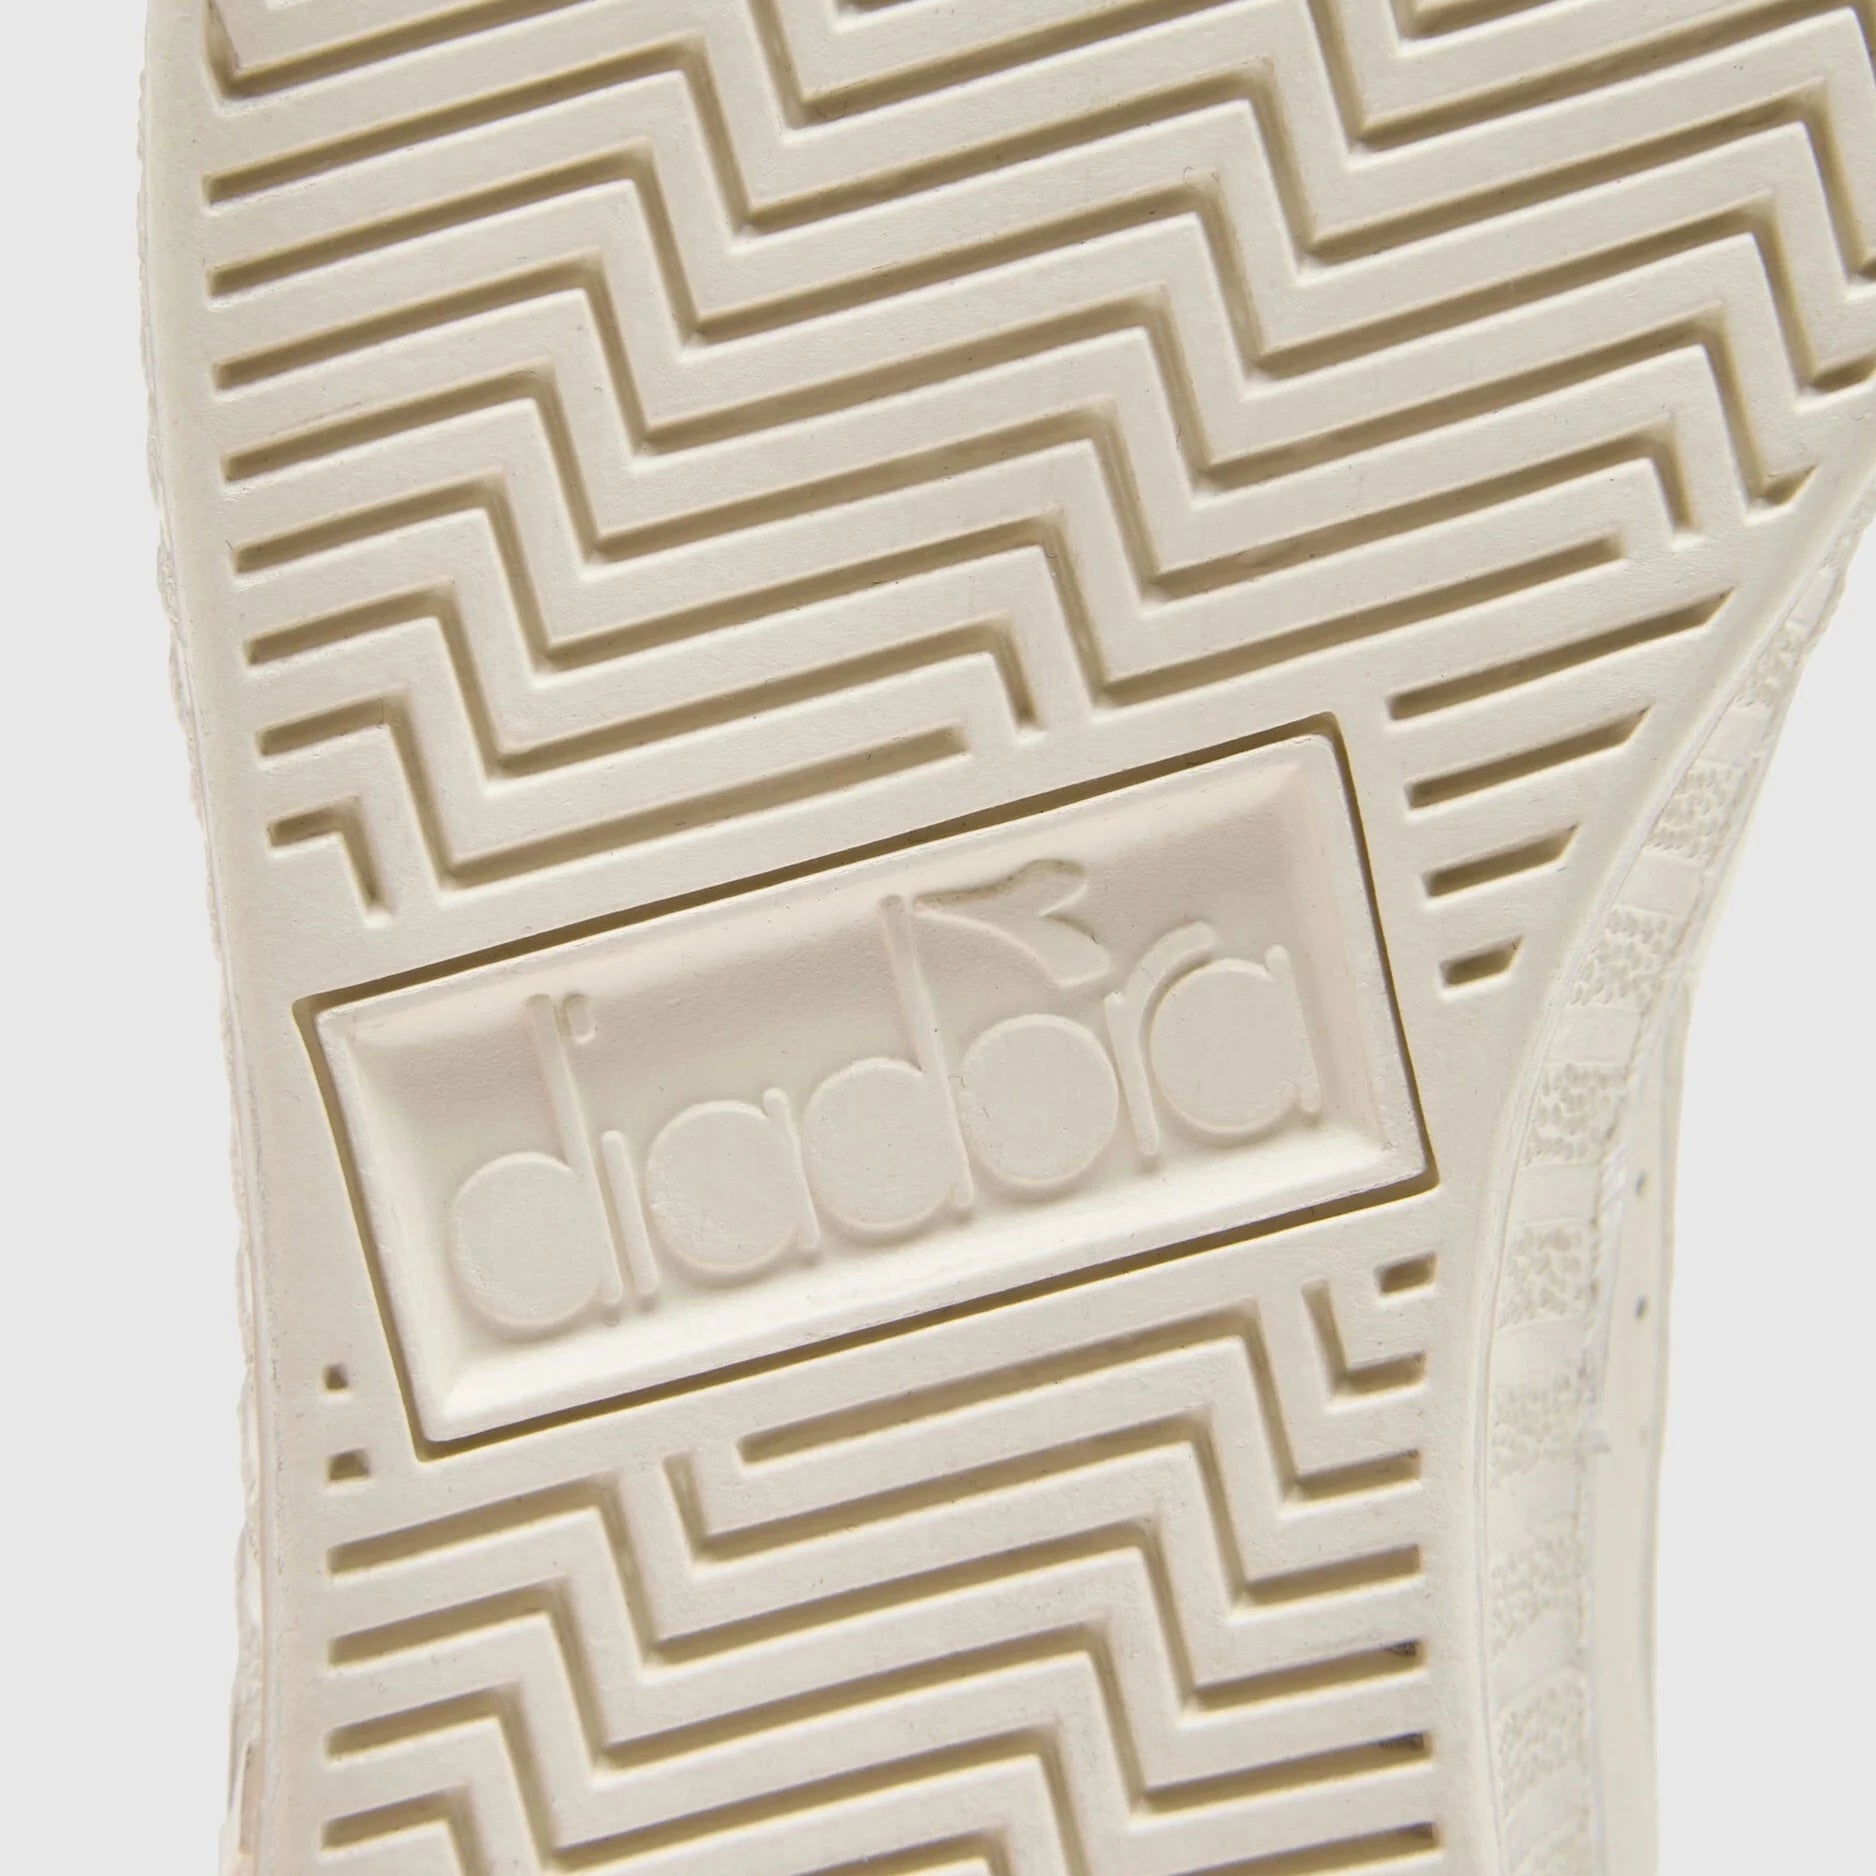 Sneakers De La Marca Diadora Para Unisex Modelo Game L Waxed Row Cut En Color Blanco